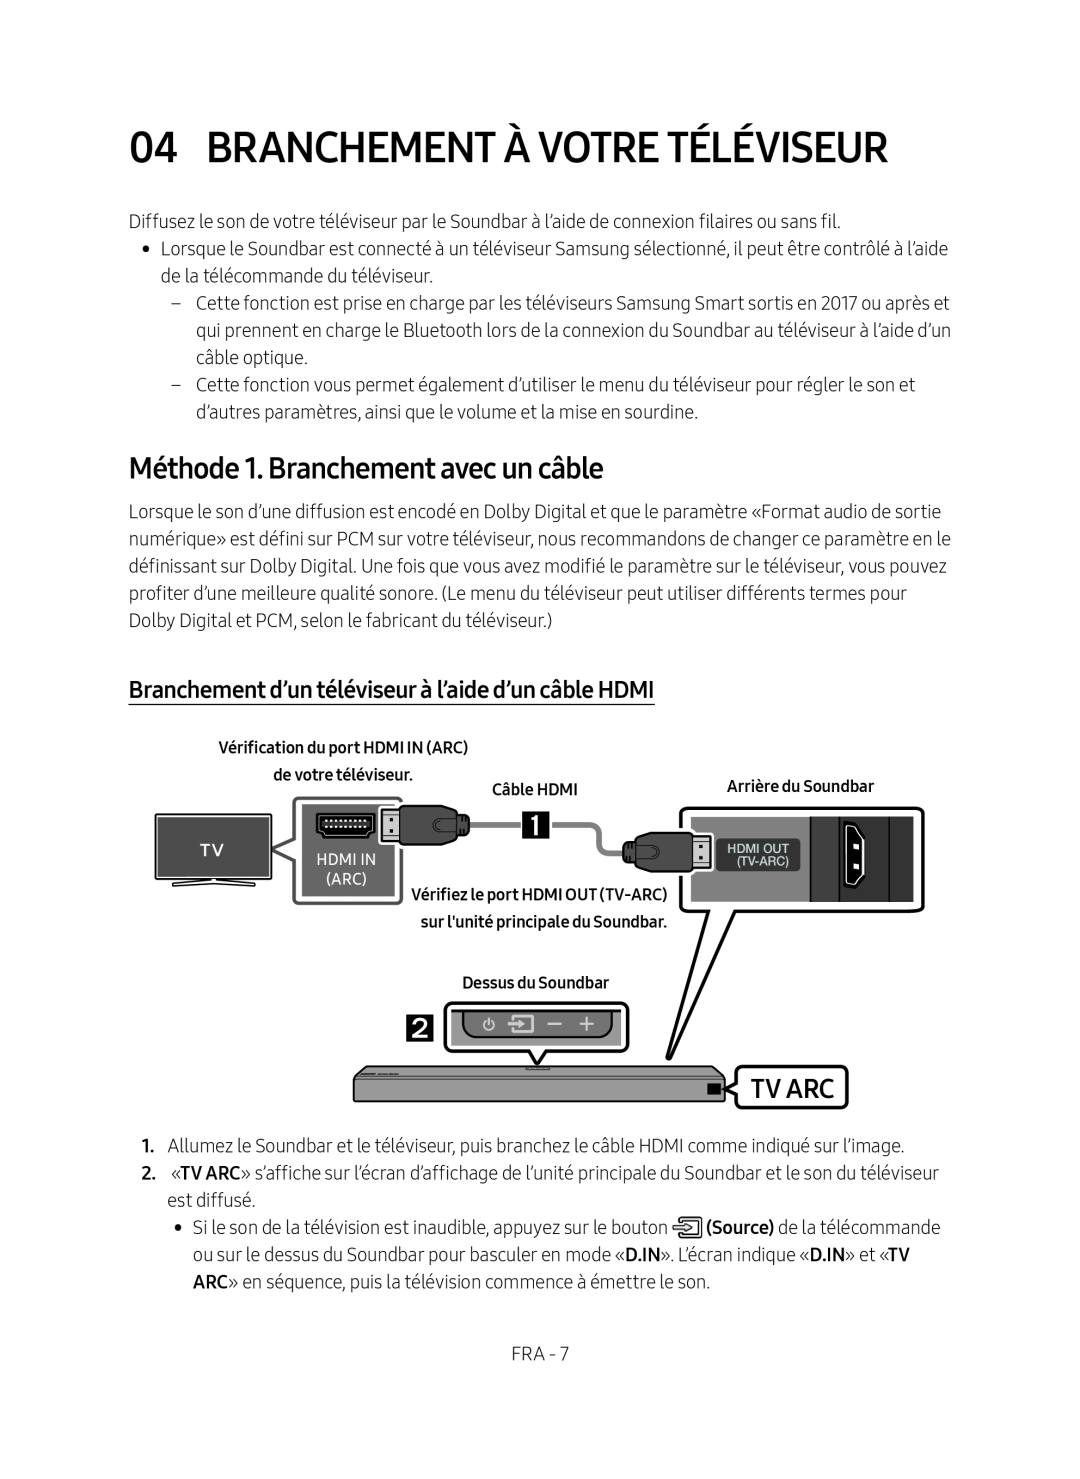 Branchement d’un téléviseur à l’aide d’un câble HDMI Dolby Atmos HW-N850